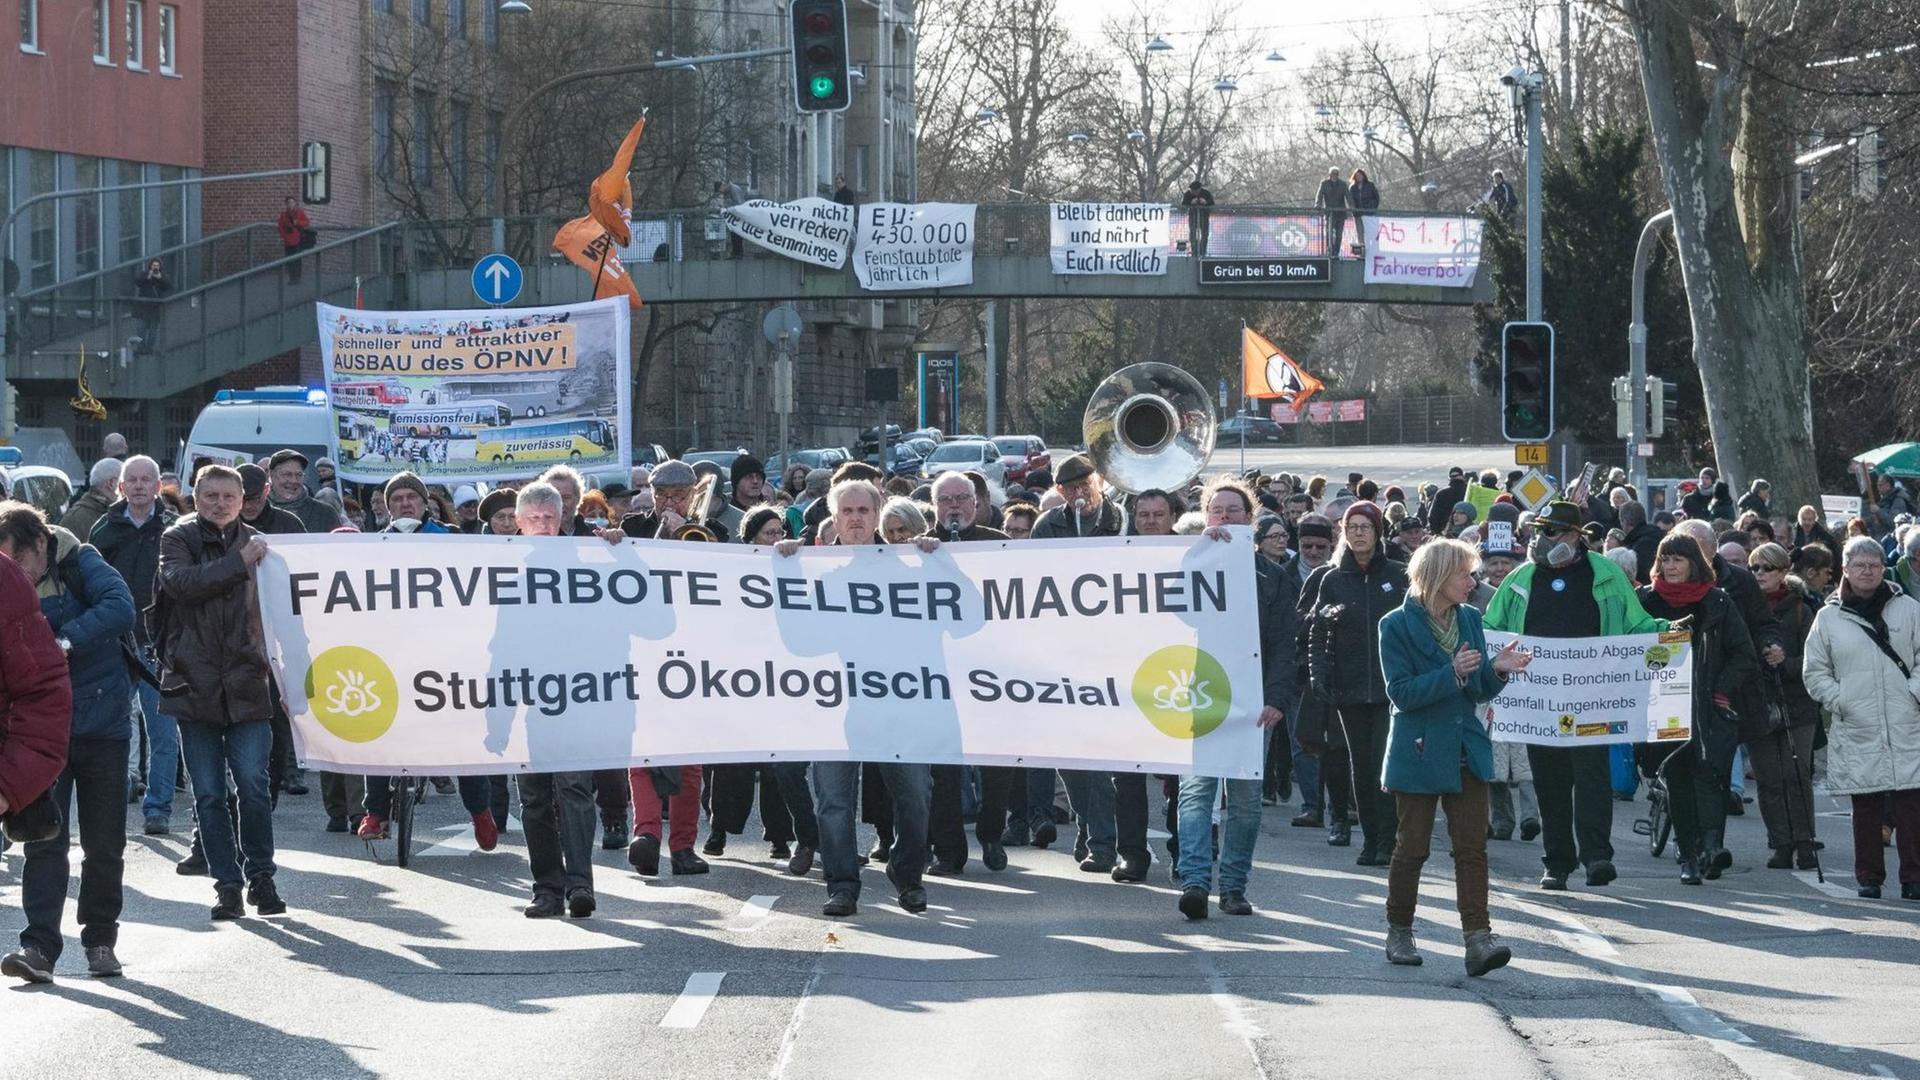 Teilnehmer einer Demonstration gegen Feinstaubbelastung in Stuttgart während einer Kundgebung am 01.01.2018 an der B14 in Stuttgart (Baden-Württemberg). Unter dem Motto "Fahrverbote selber machen - Menschen schützen" haben rund 400 Teilnehmer gegen die Feinstaubbelastung am Stuttgarter Neckartor protestiert.